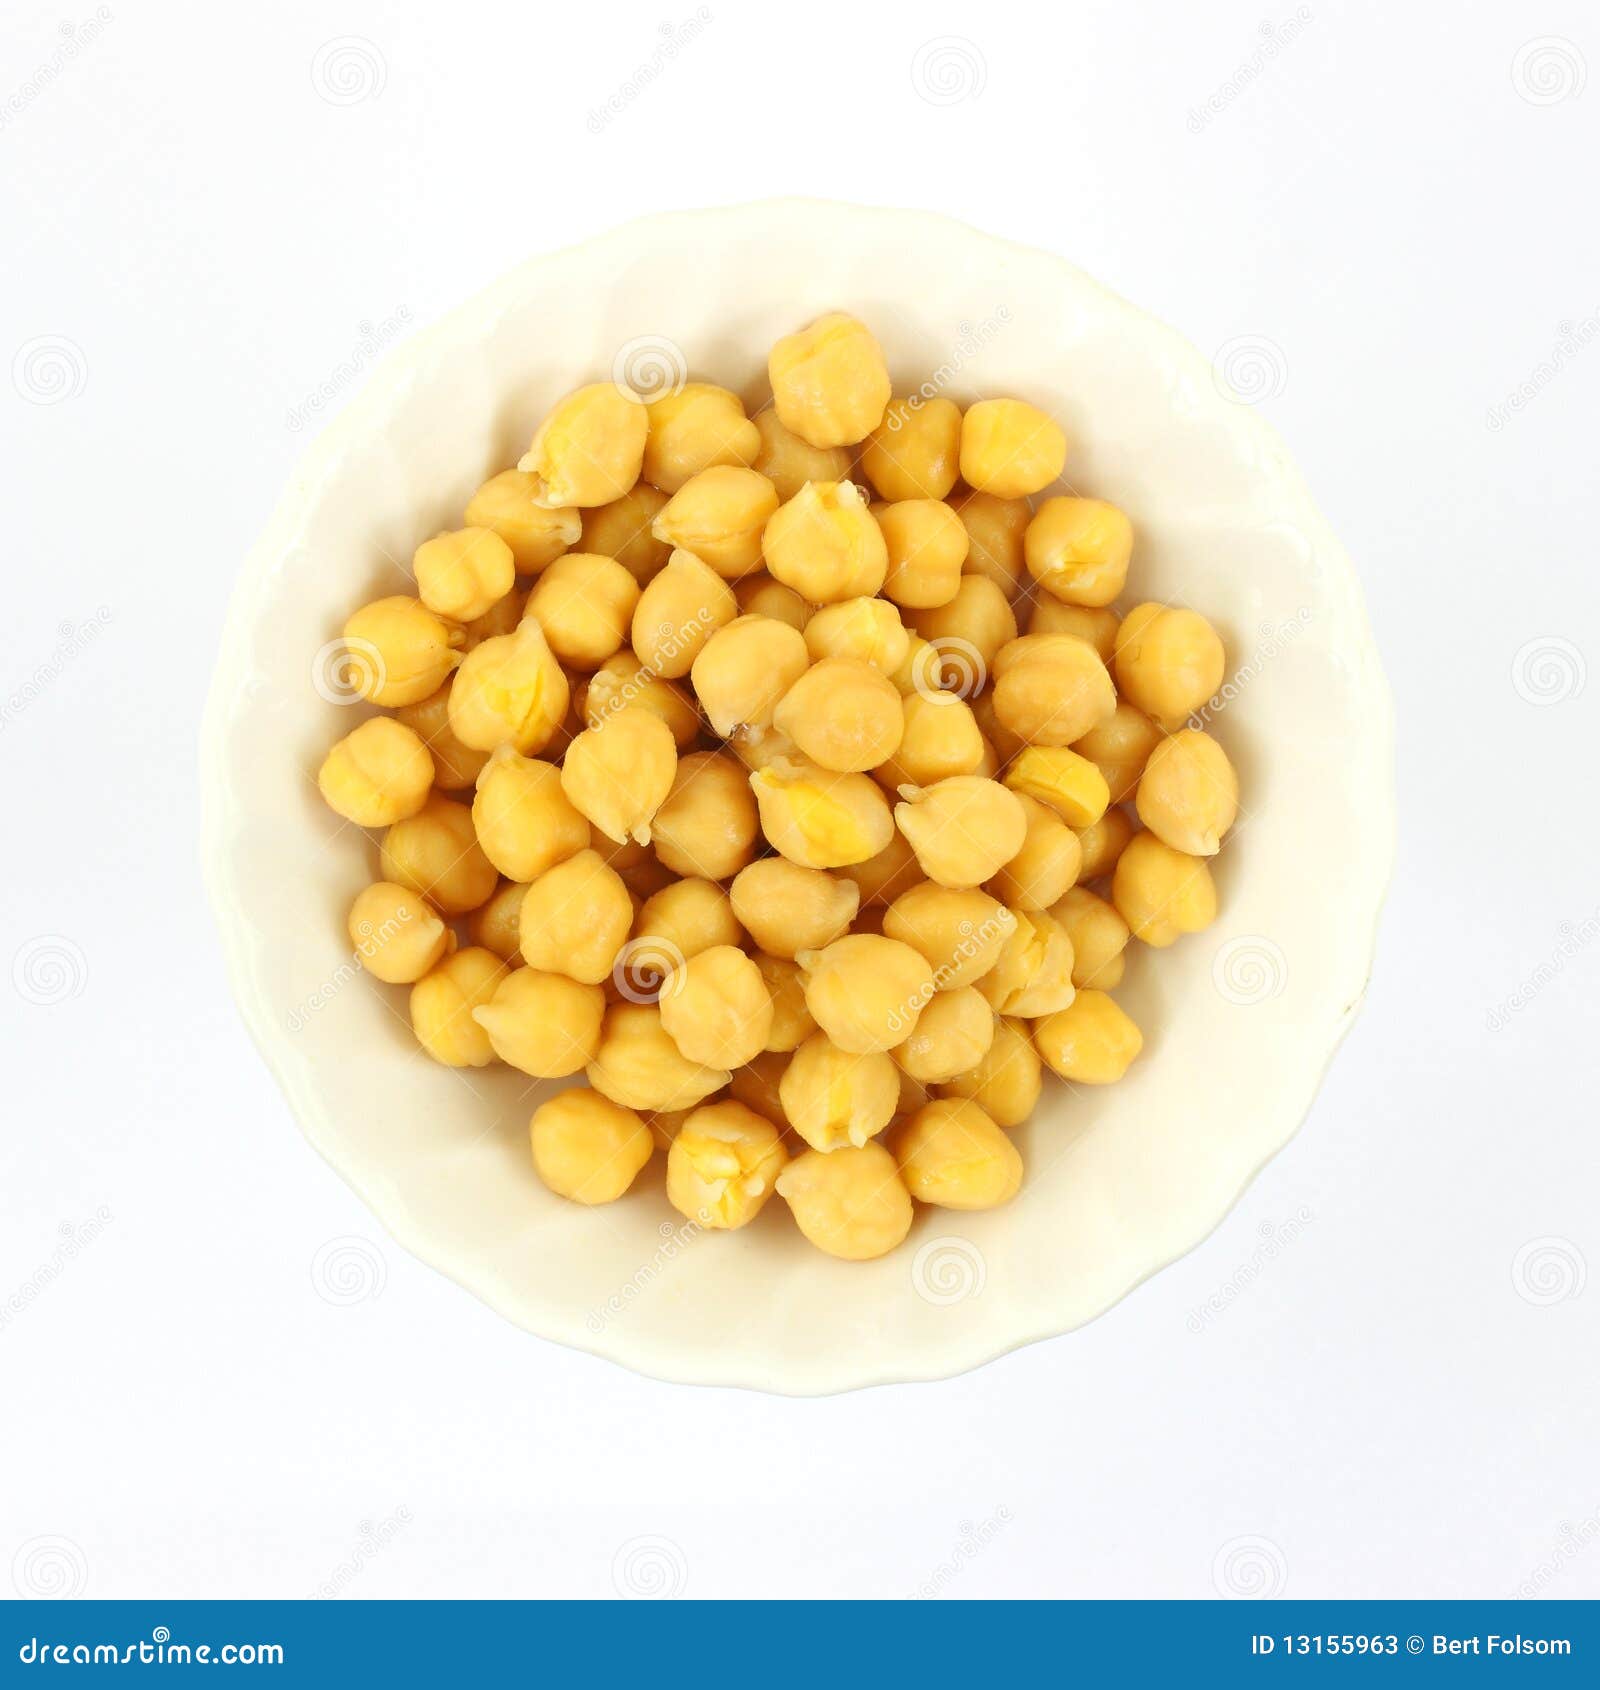 garbanzo beans in white bowl